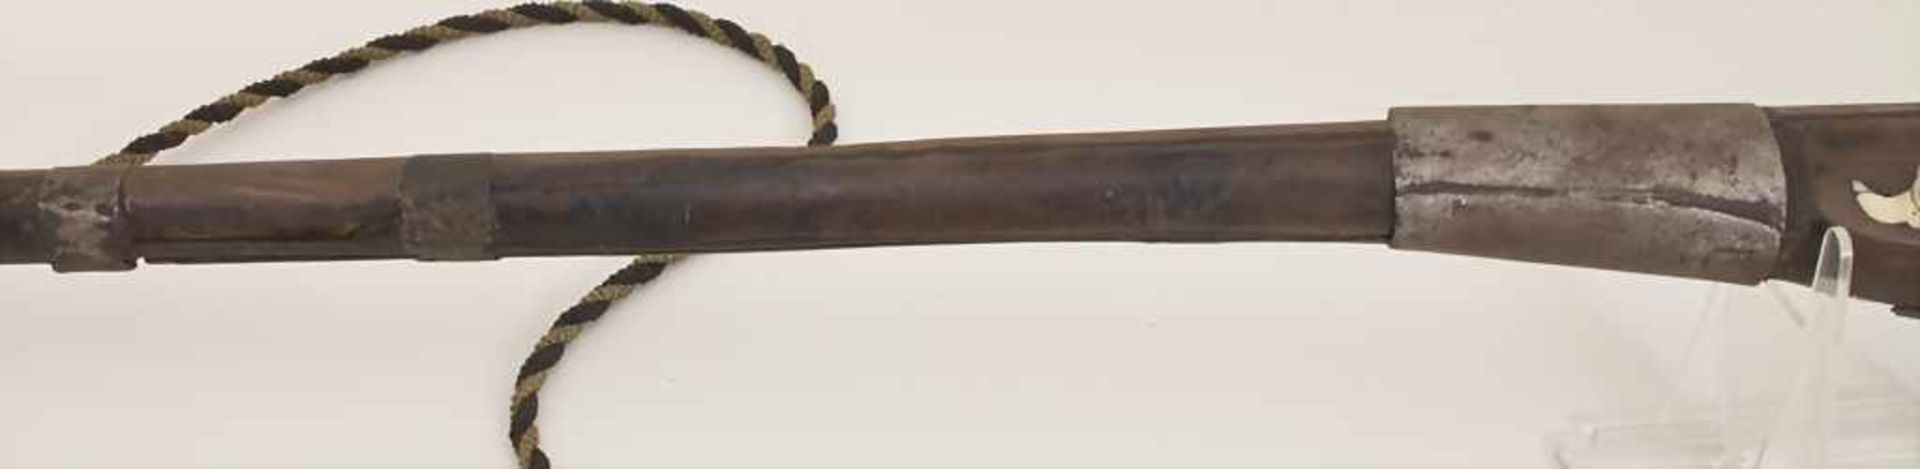 Steinschlossgewehr / A flintflock musket, Nordafrika, 19. Jh.Material: Hartholz, Eisen, - Image 3 of 7